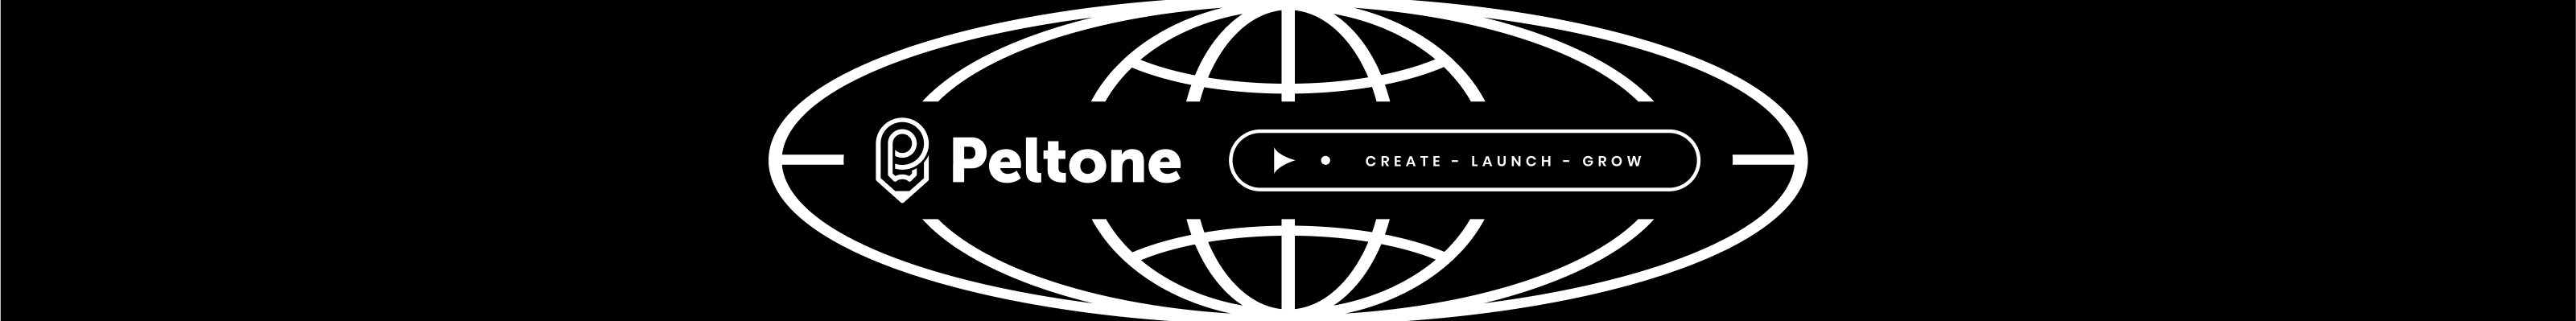 Profil-Banner von Peltone Design